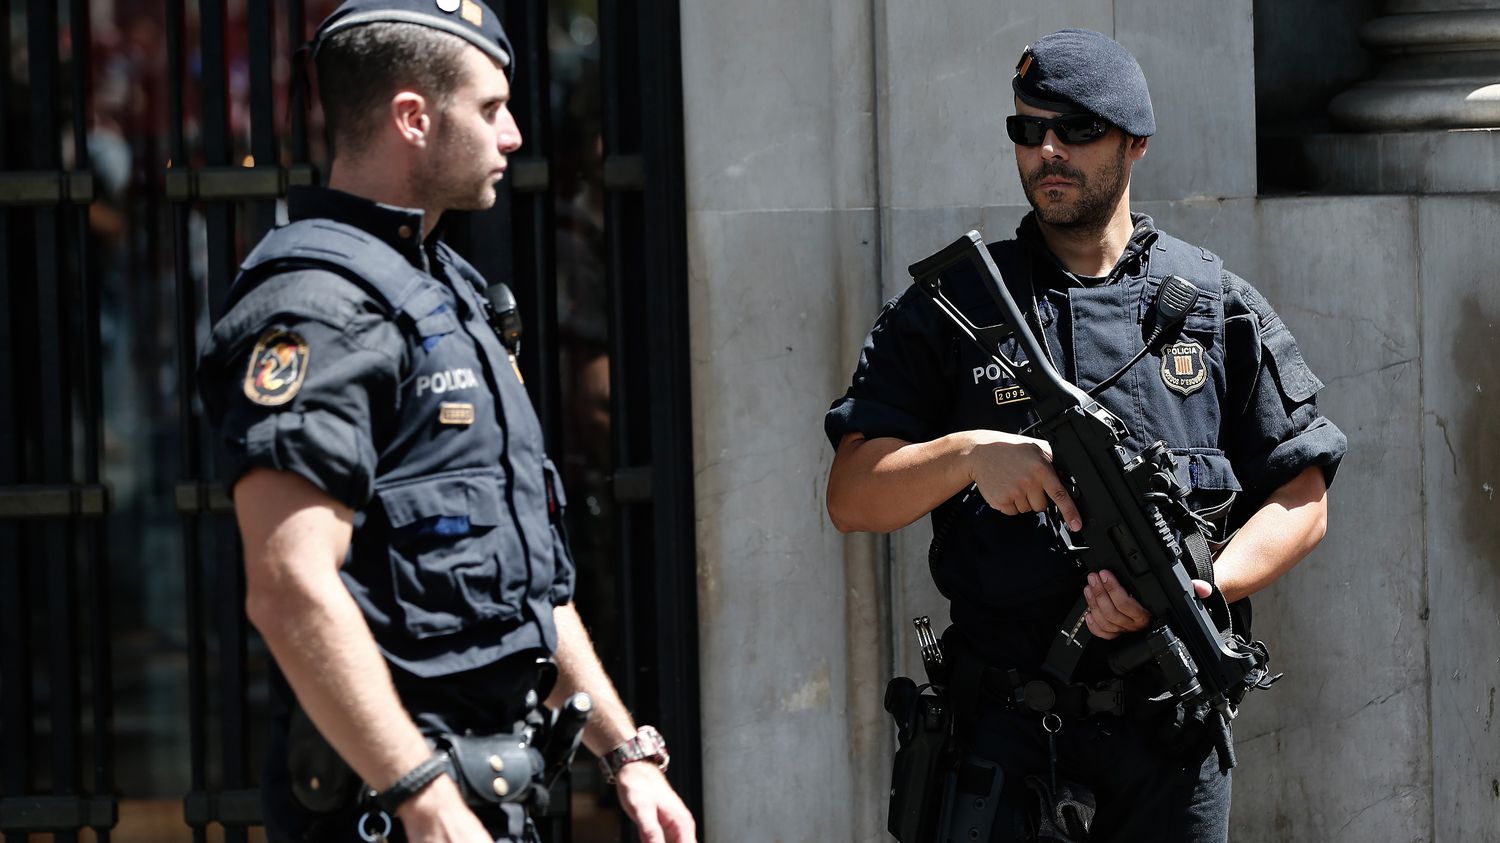 مكافحة الإرهاب في إسبانيا ـ أنشطة التنظيمات المتطرفة